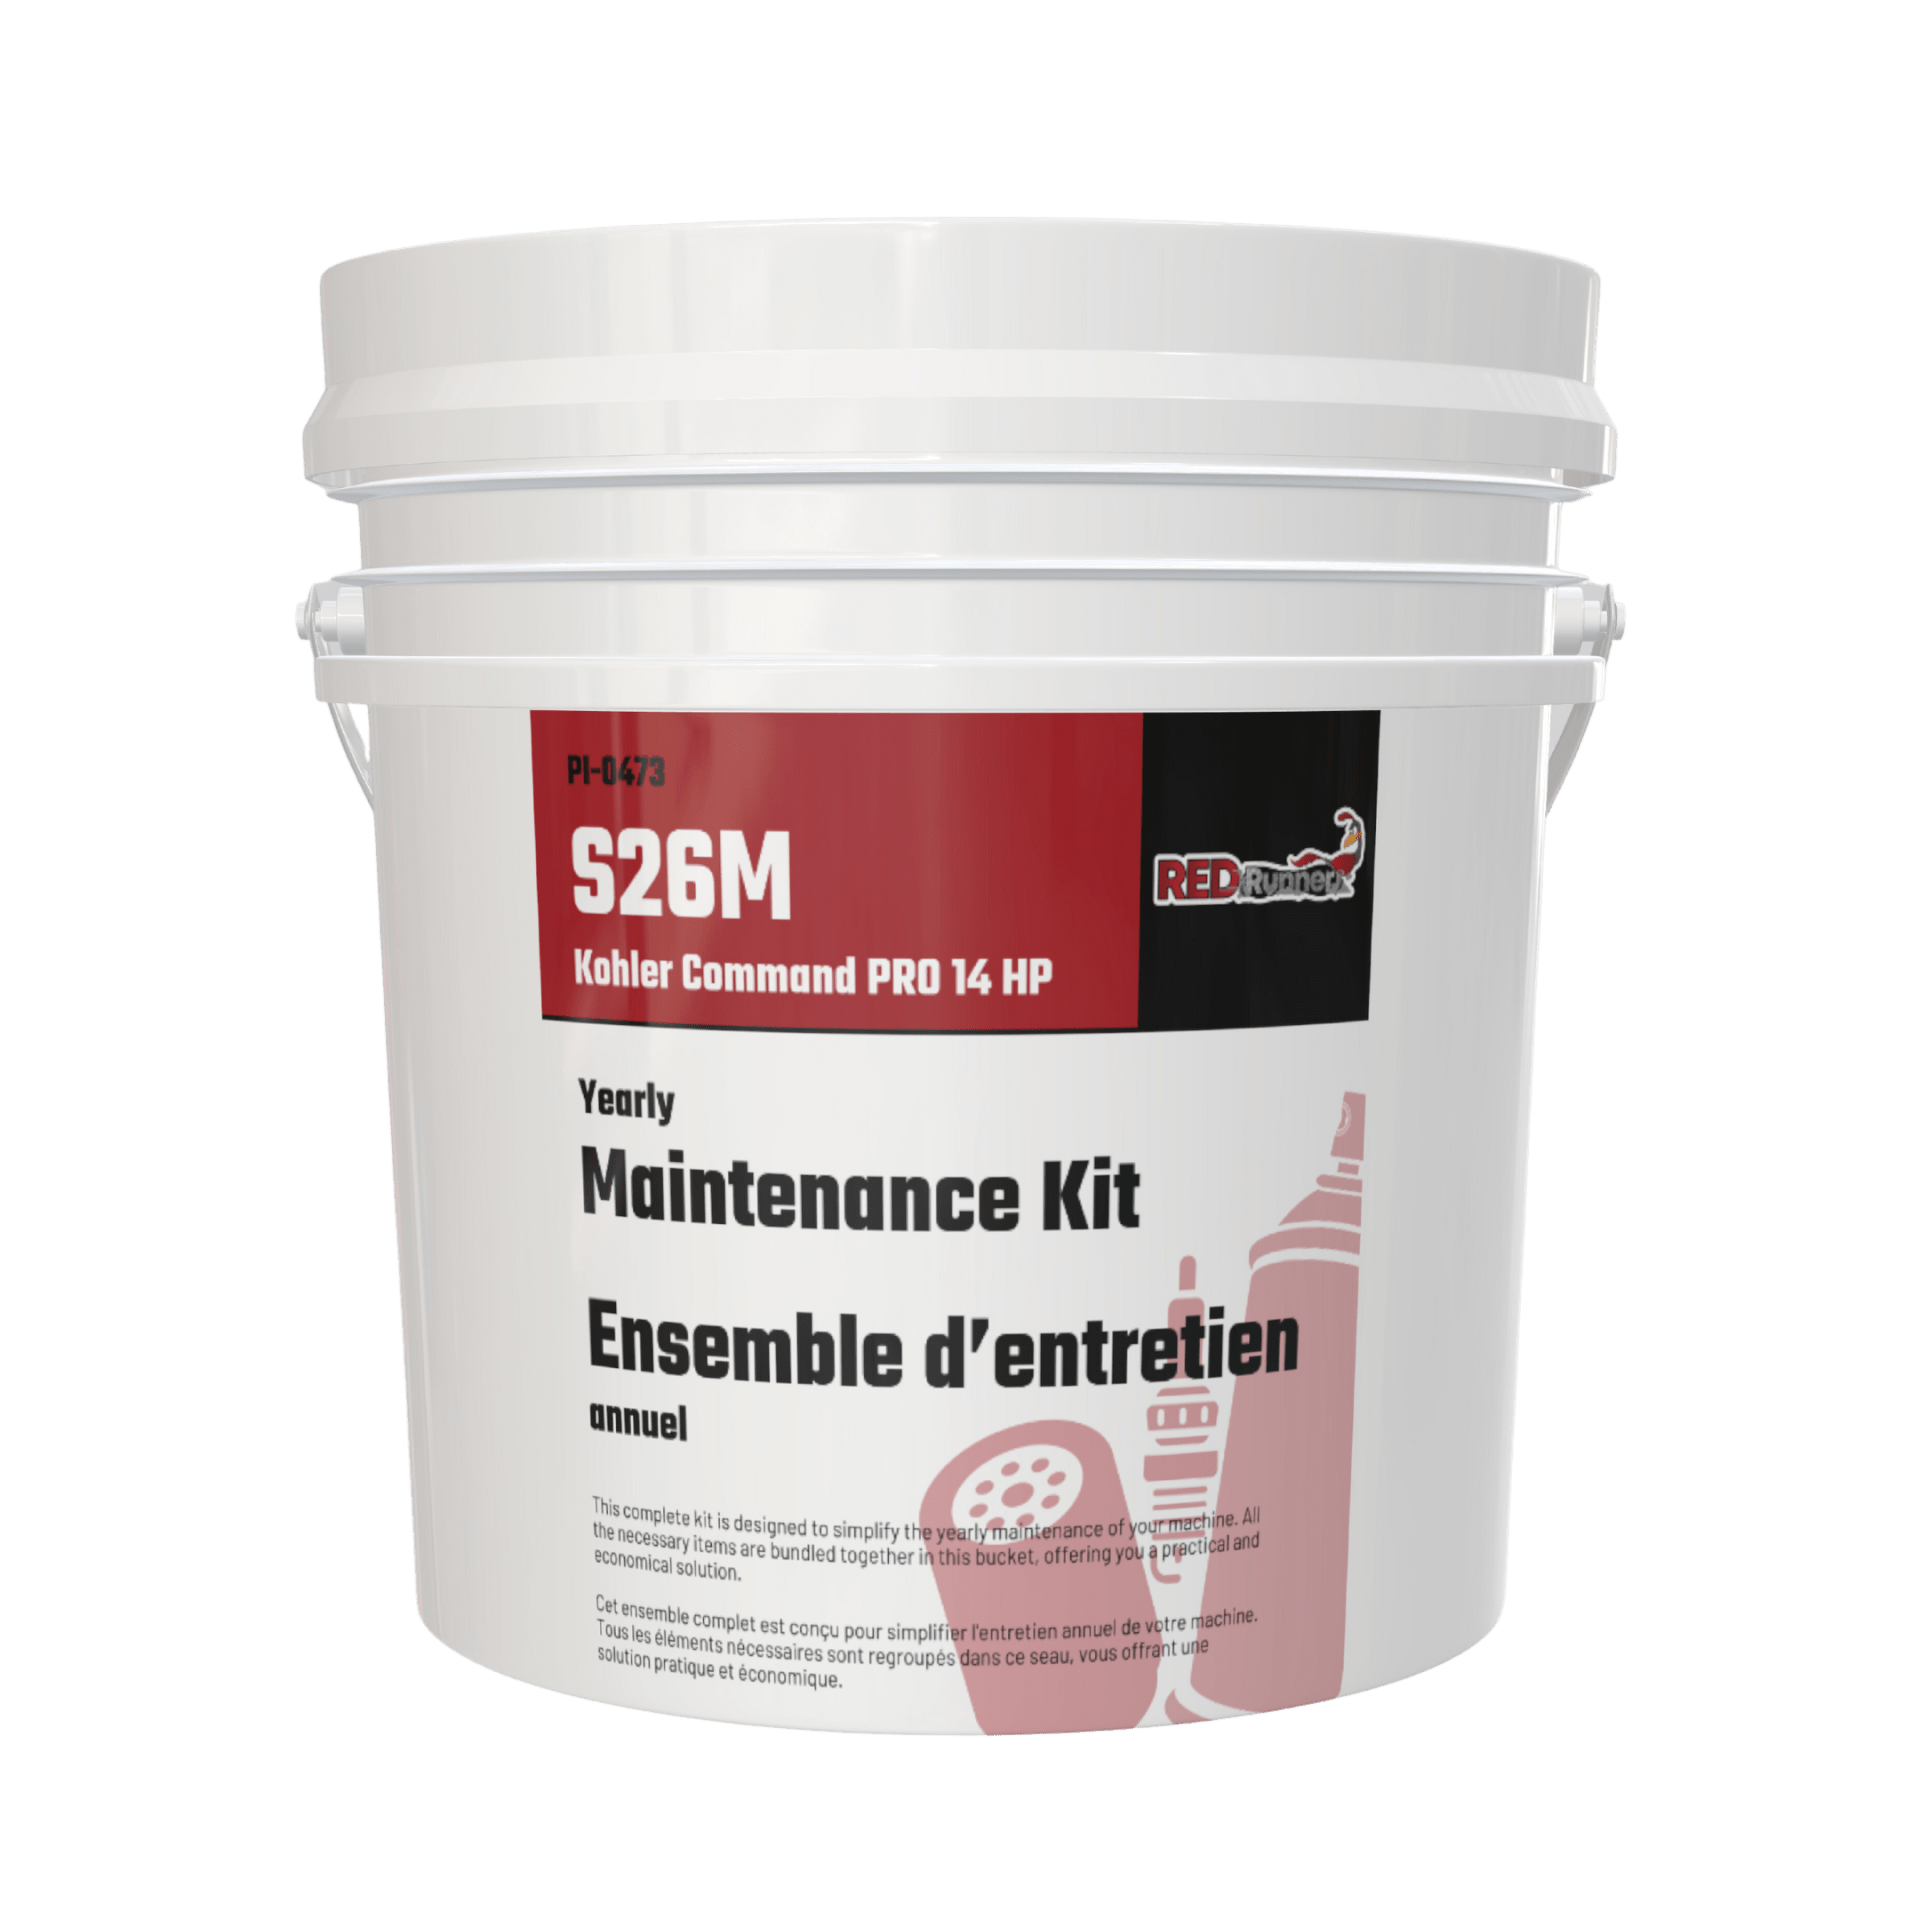 Maintenance Kit for Red Runner S26M